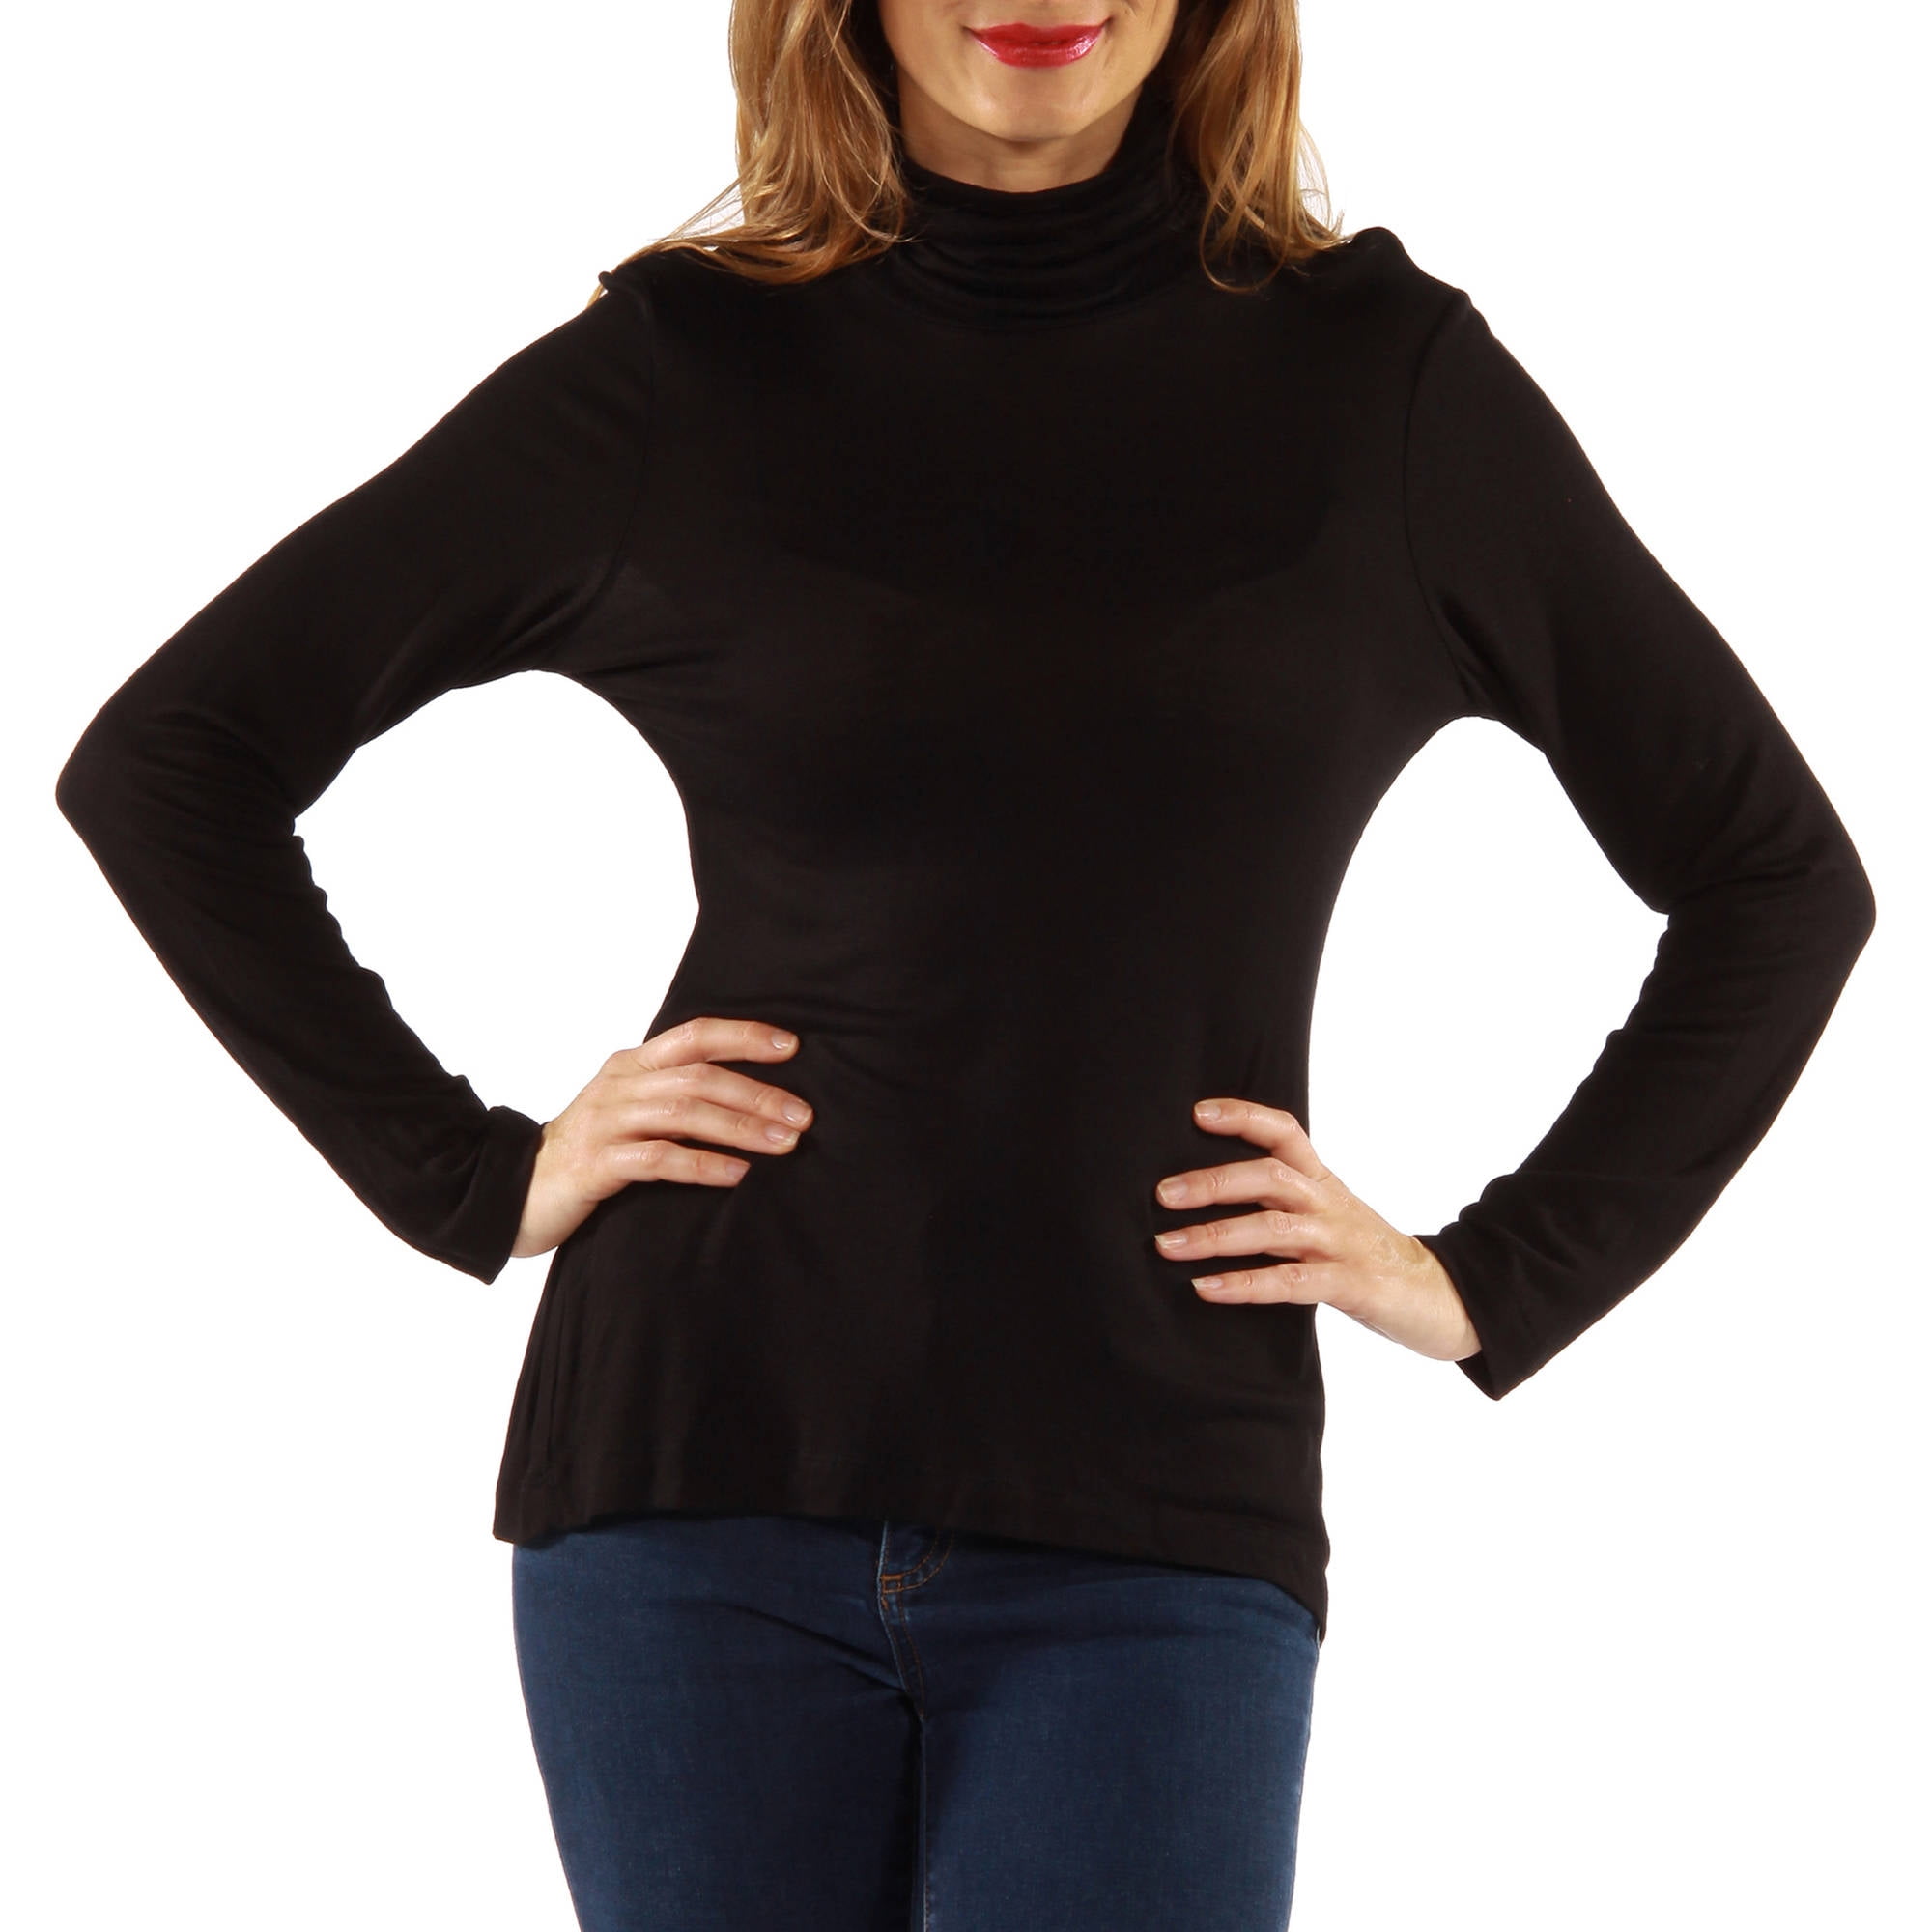 24/7 Comfort Apparel Women's Turtleneck Sweater - Walmart.com